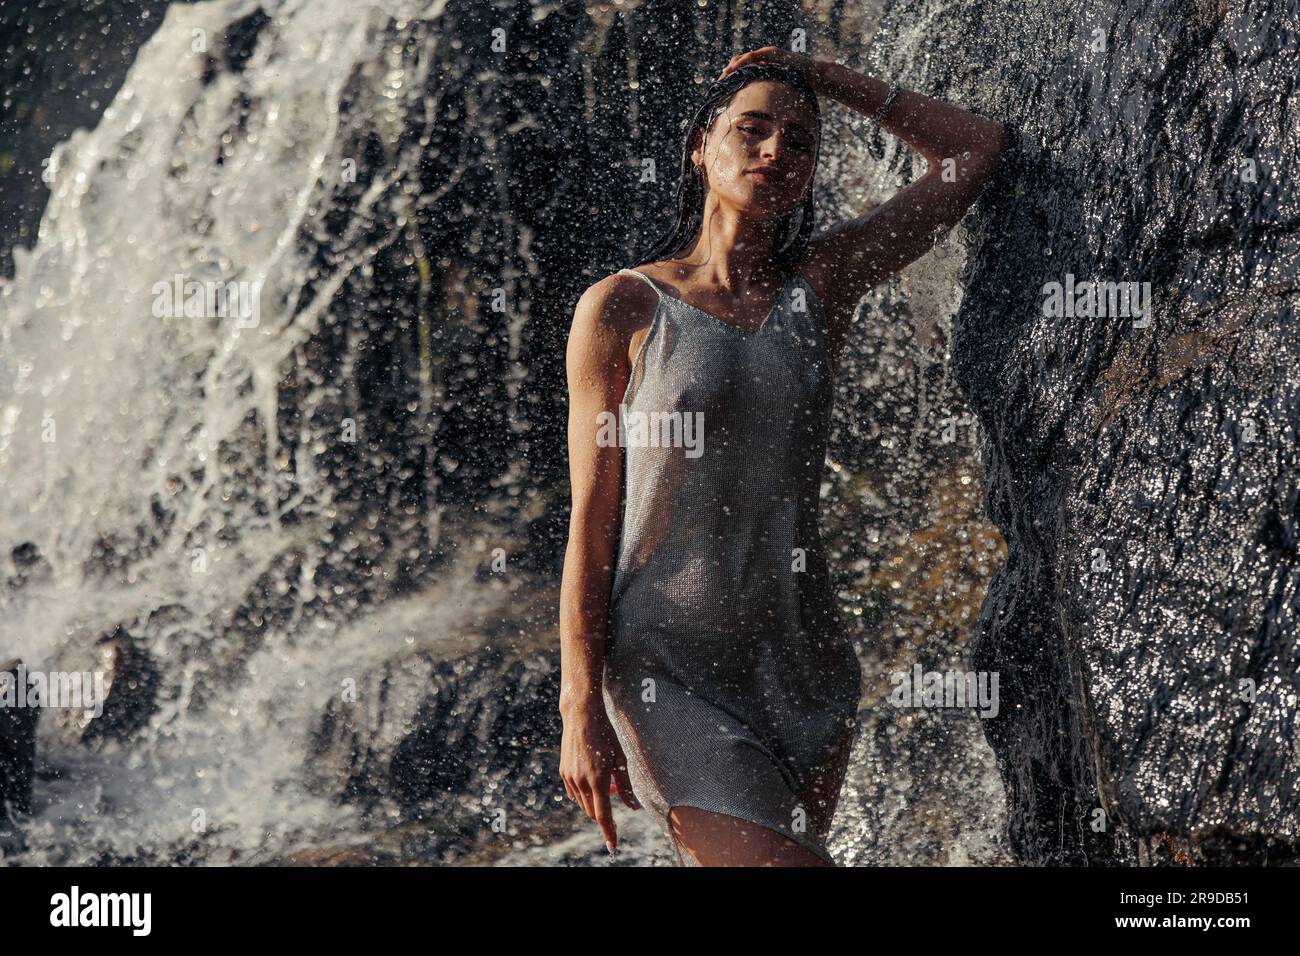 Junge Frau in nassem Kleid steht in der Nähe des Wasserfalls zwischen Wasserströmen, Spray und Schaum. Stockfoto